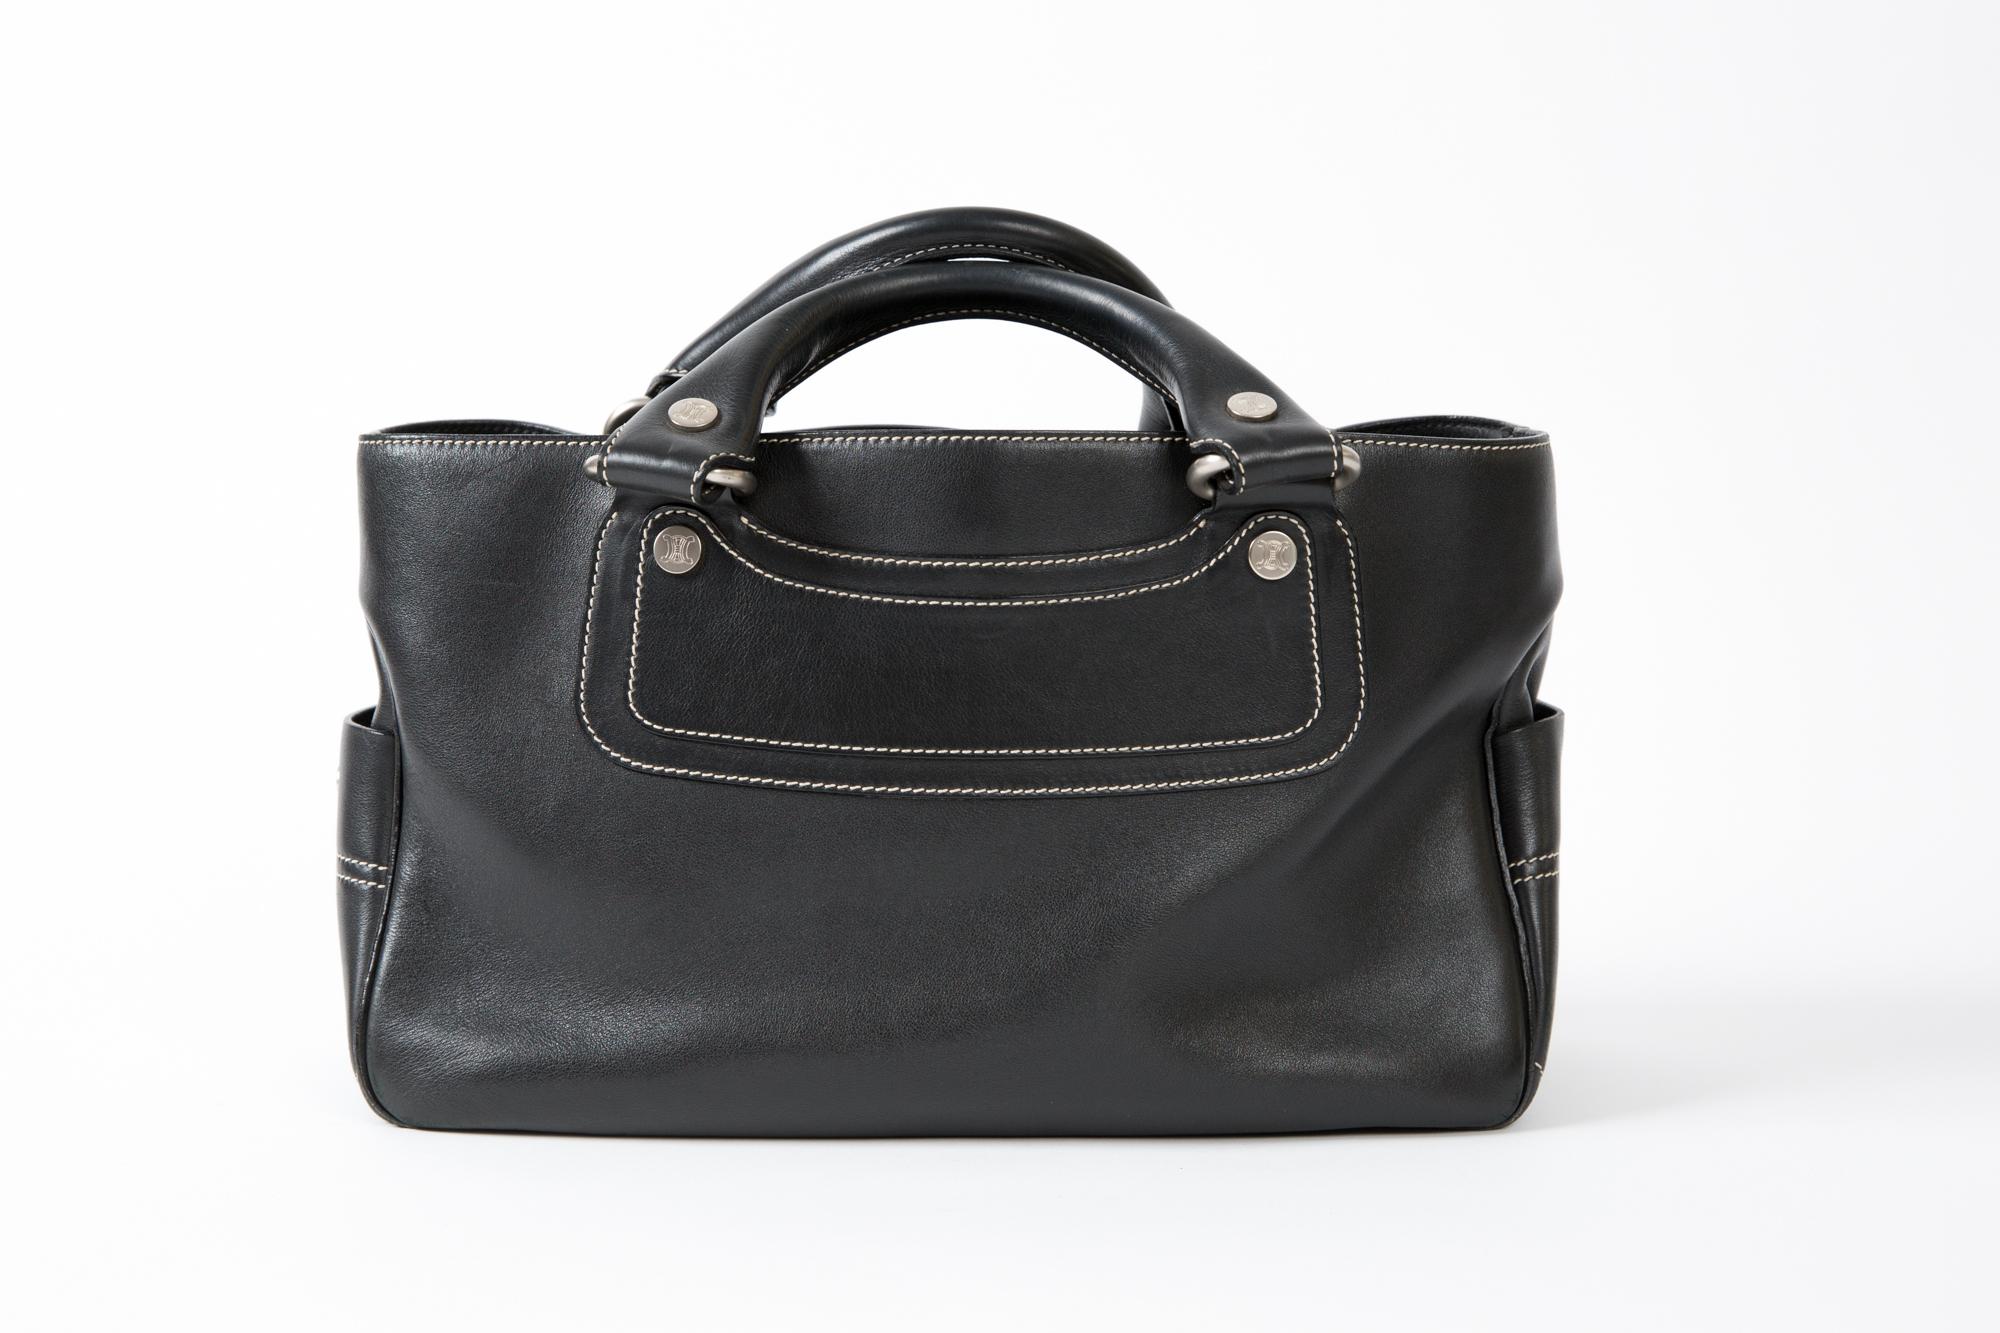 Le sac fourre-tout en cuir noir Celine Boogie est doté de poignées supérieures, de surpiqûres blanc cassé, de compartiments intérieurs, d'un compartiment intérieur zippé, d'un matériel de couleur argentée, d'un tampon logo intérieur numéroté